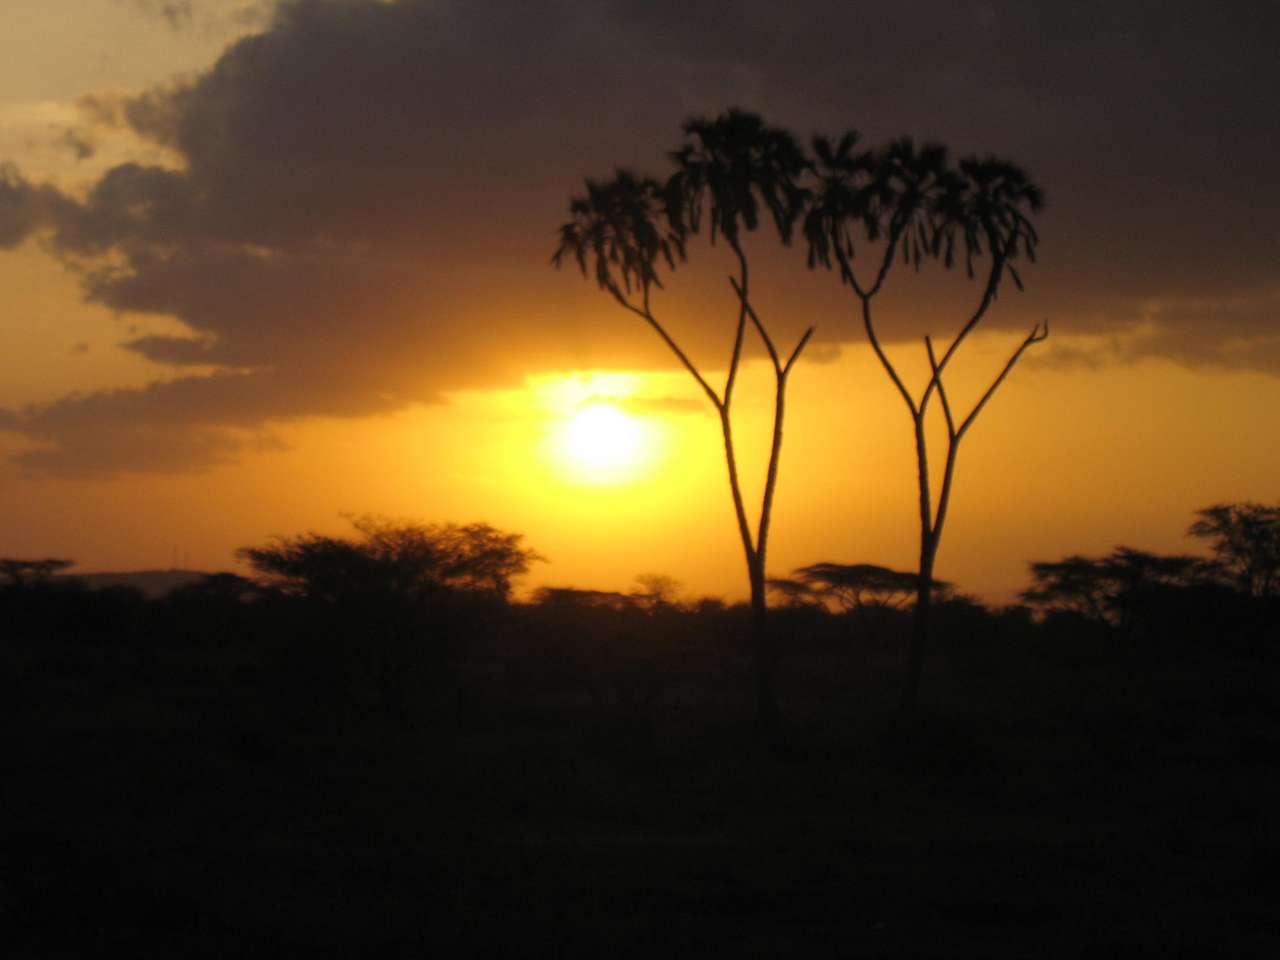 ケニアの夕方の雰囲気 ジグソーパズルオンライン